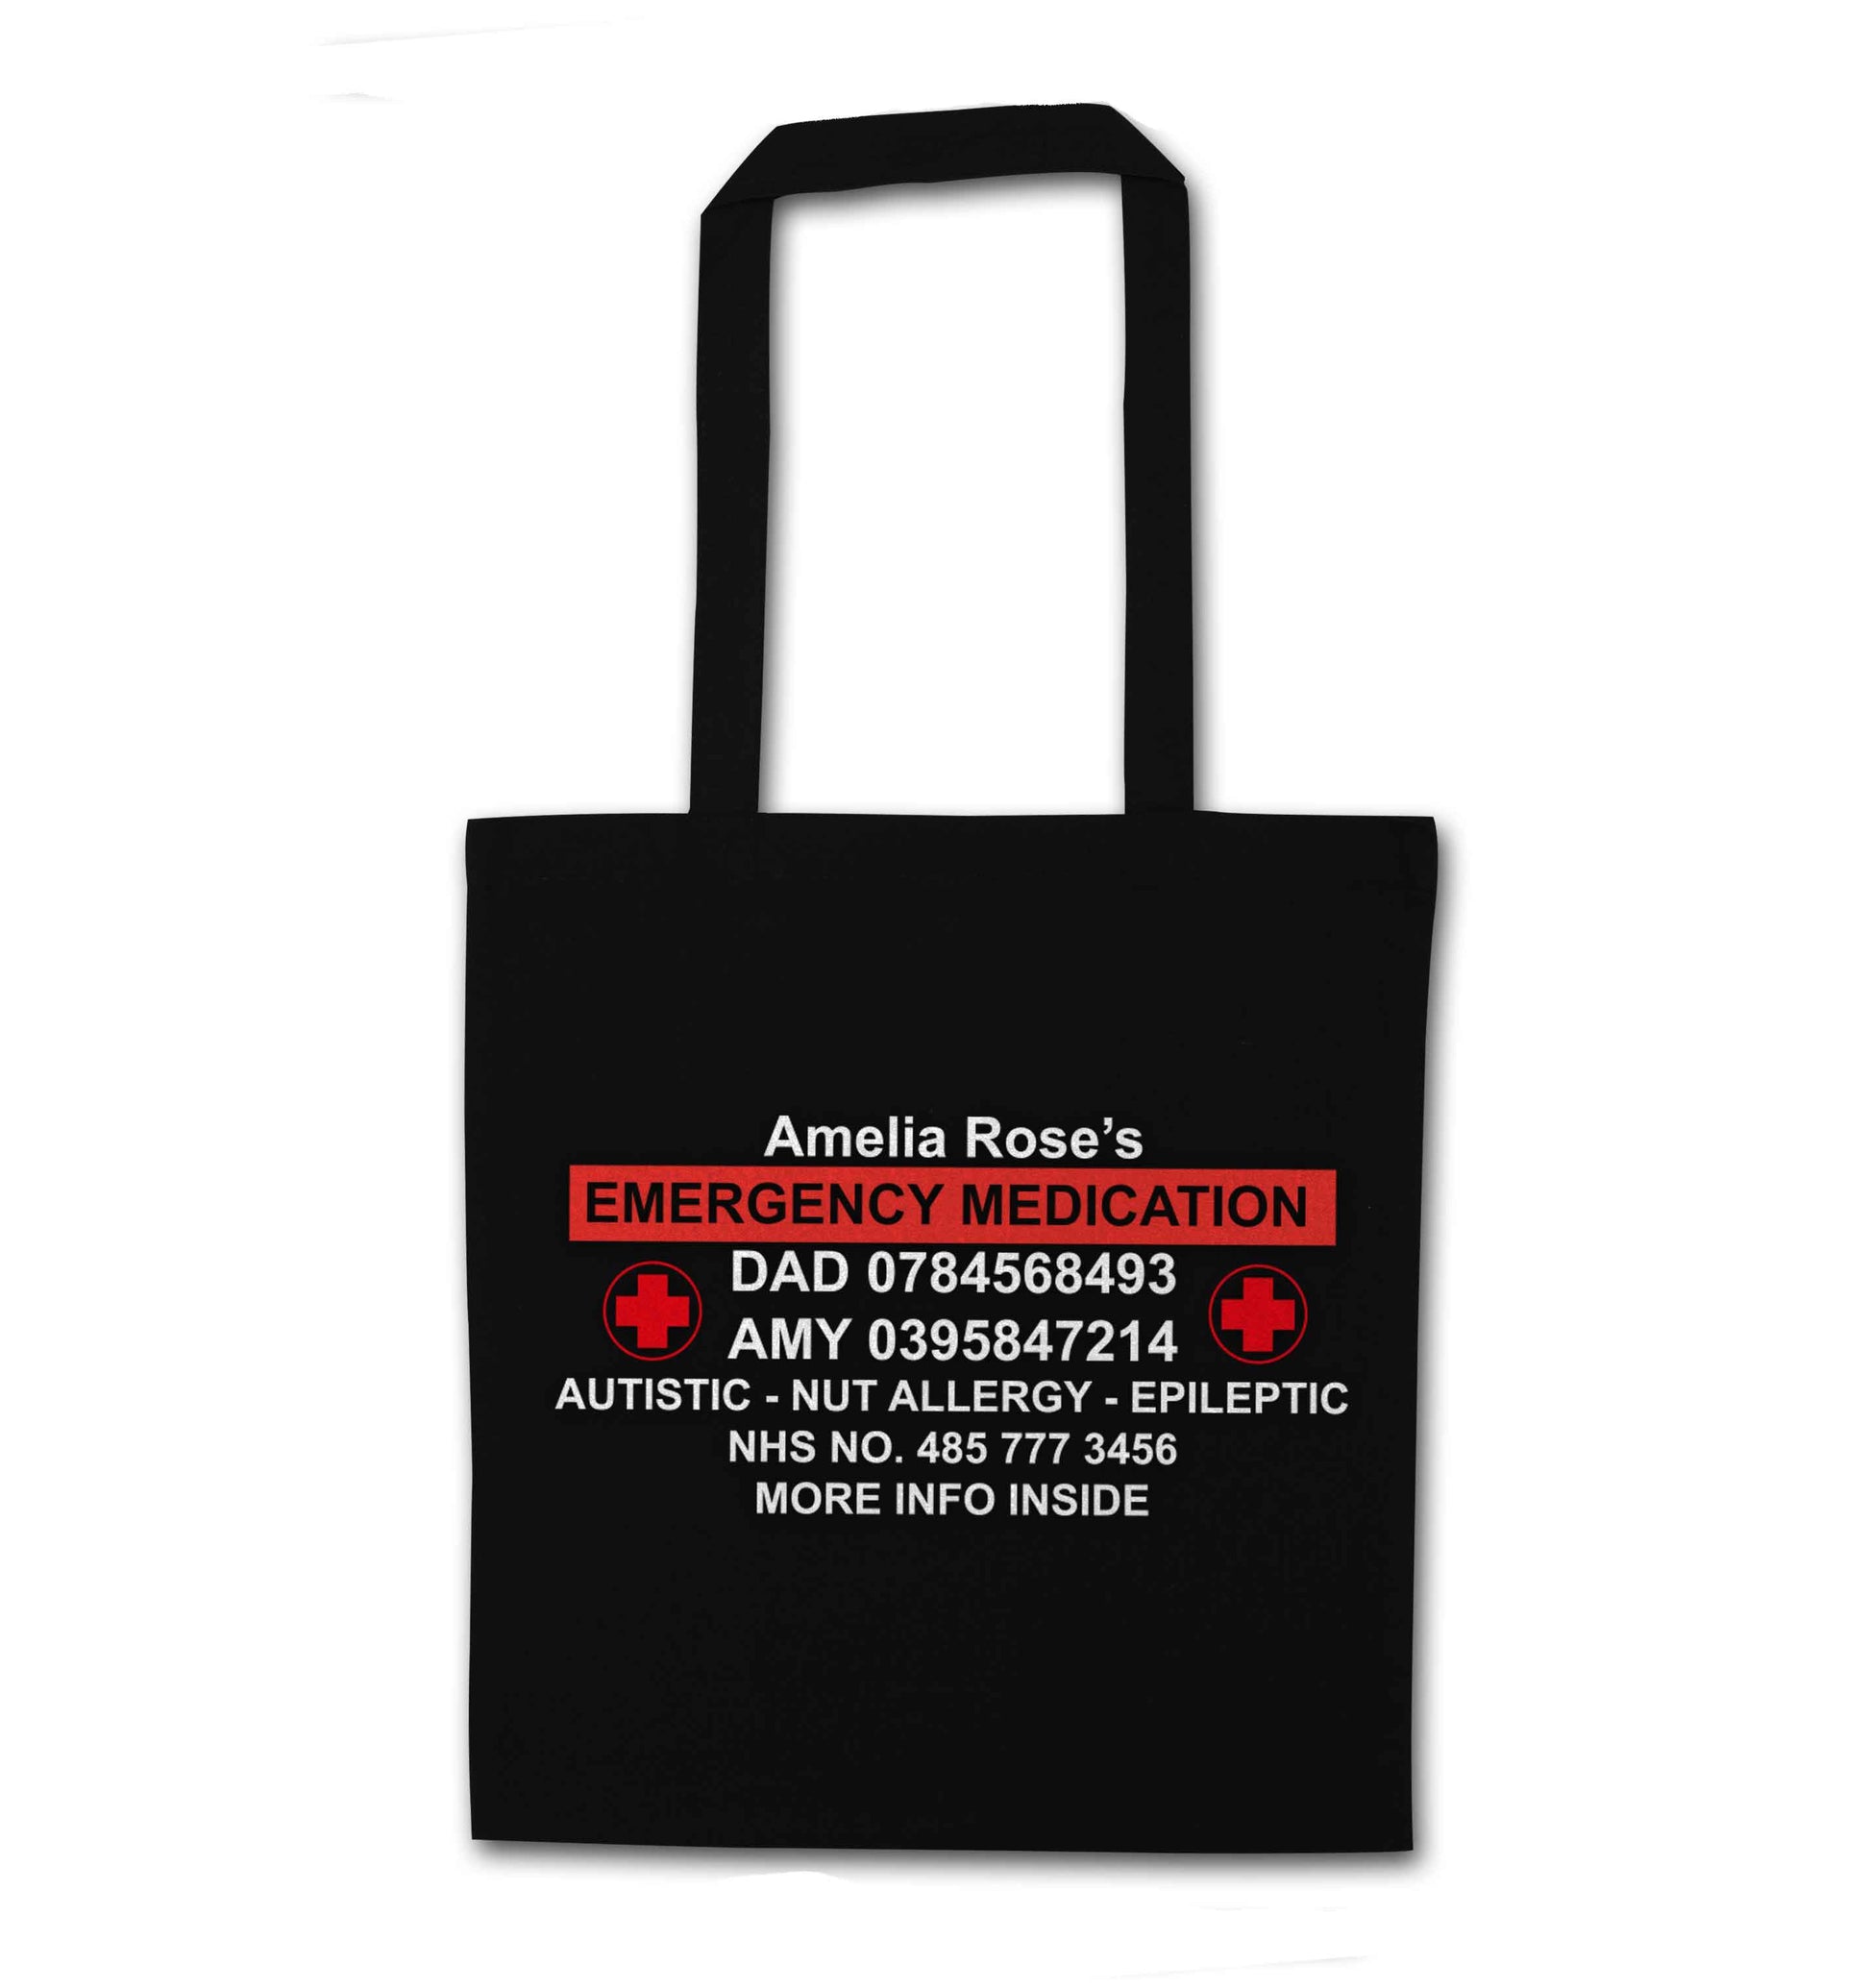 Personalised emergency medication bag black tote bag